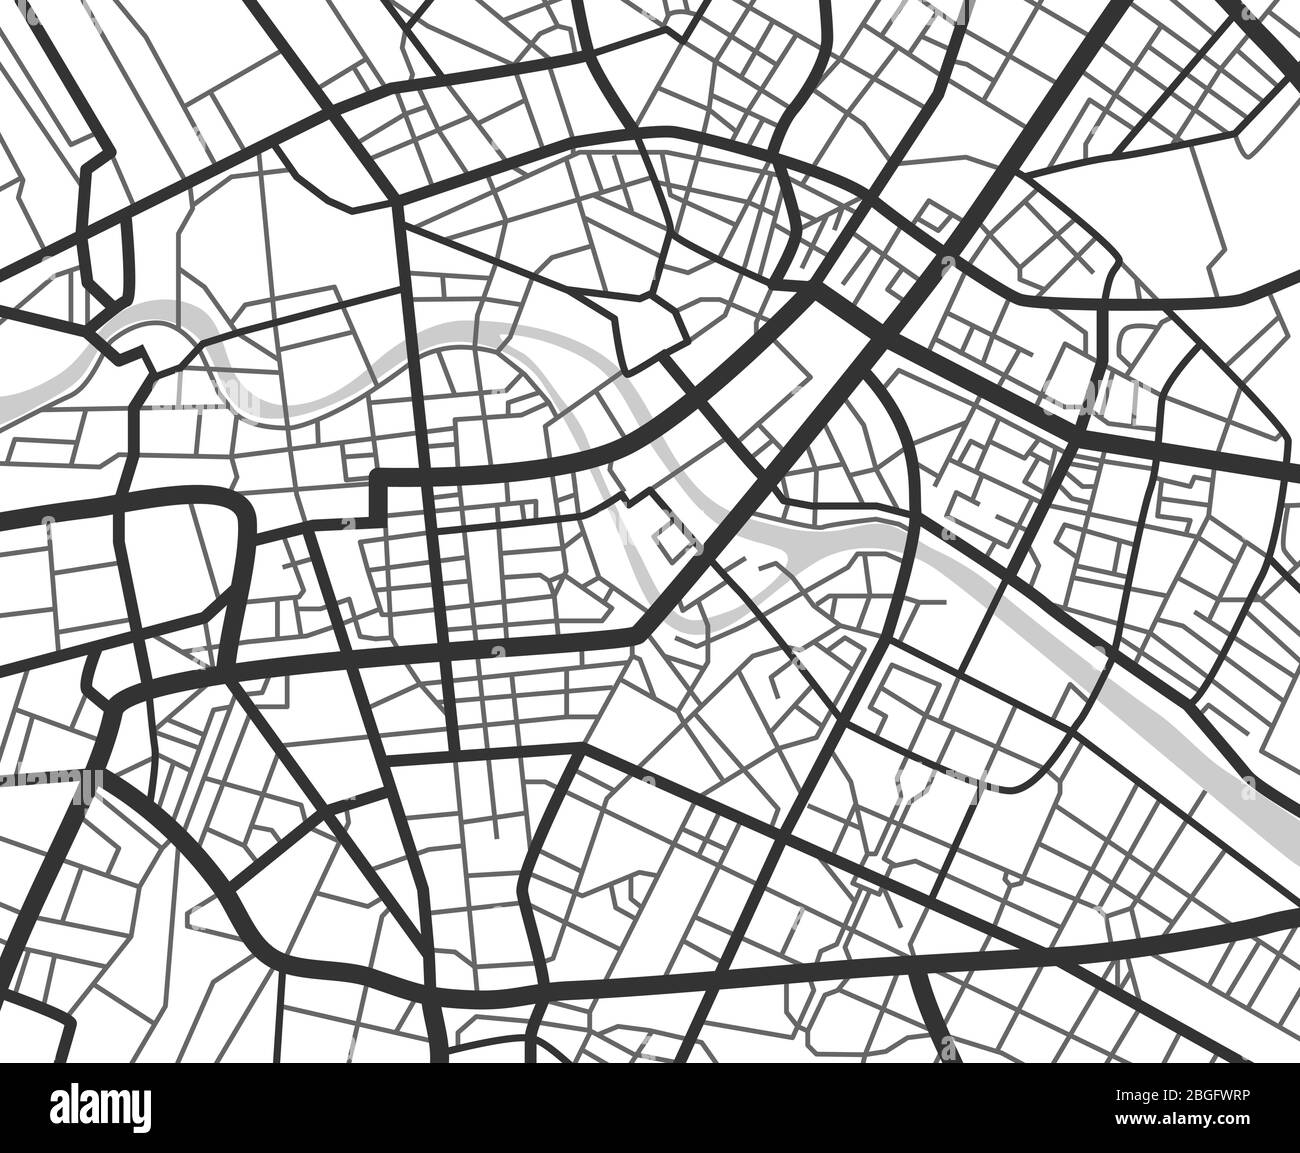 Mappa Astratta Di Navigazione Della Città Con Linee E Strade Schema Di